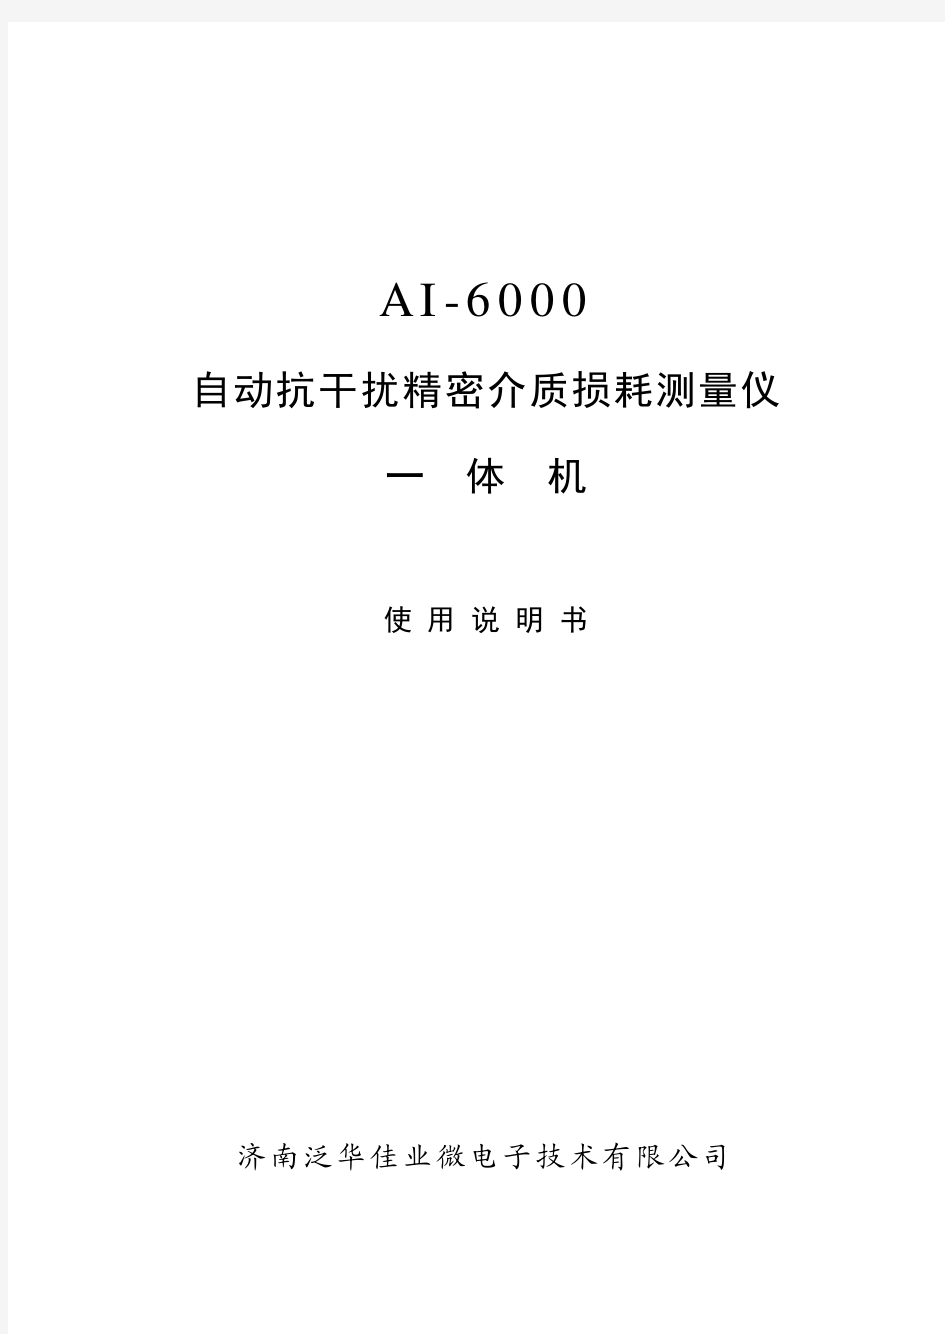 AI6000型介质损耗测试仪使用说明